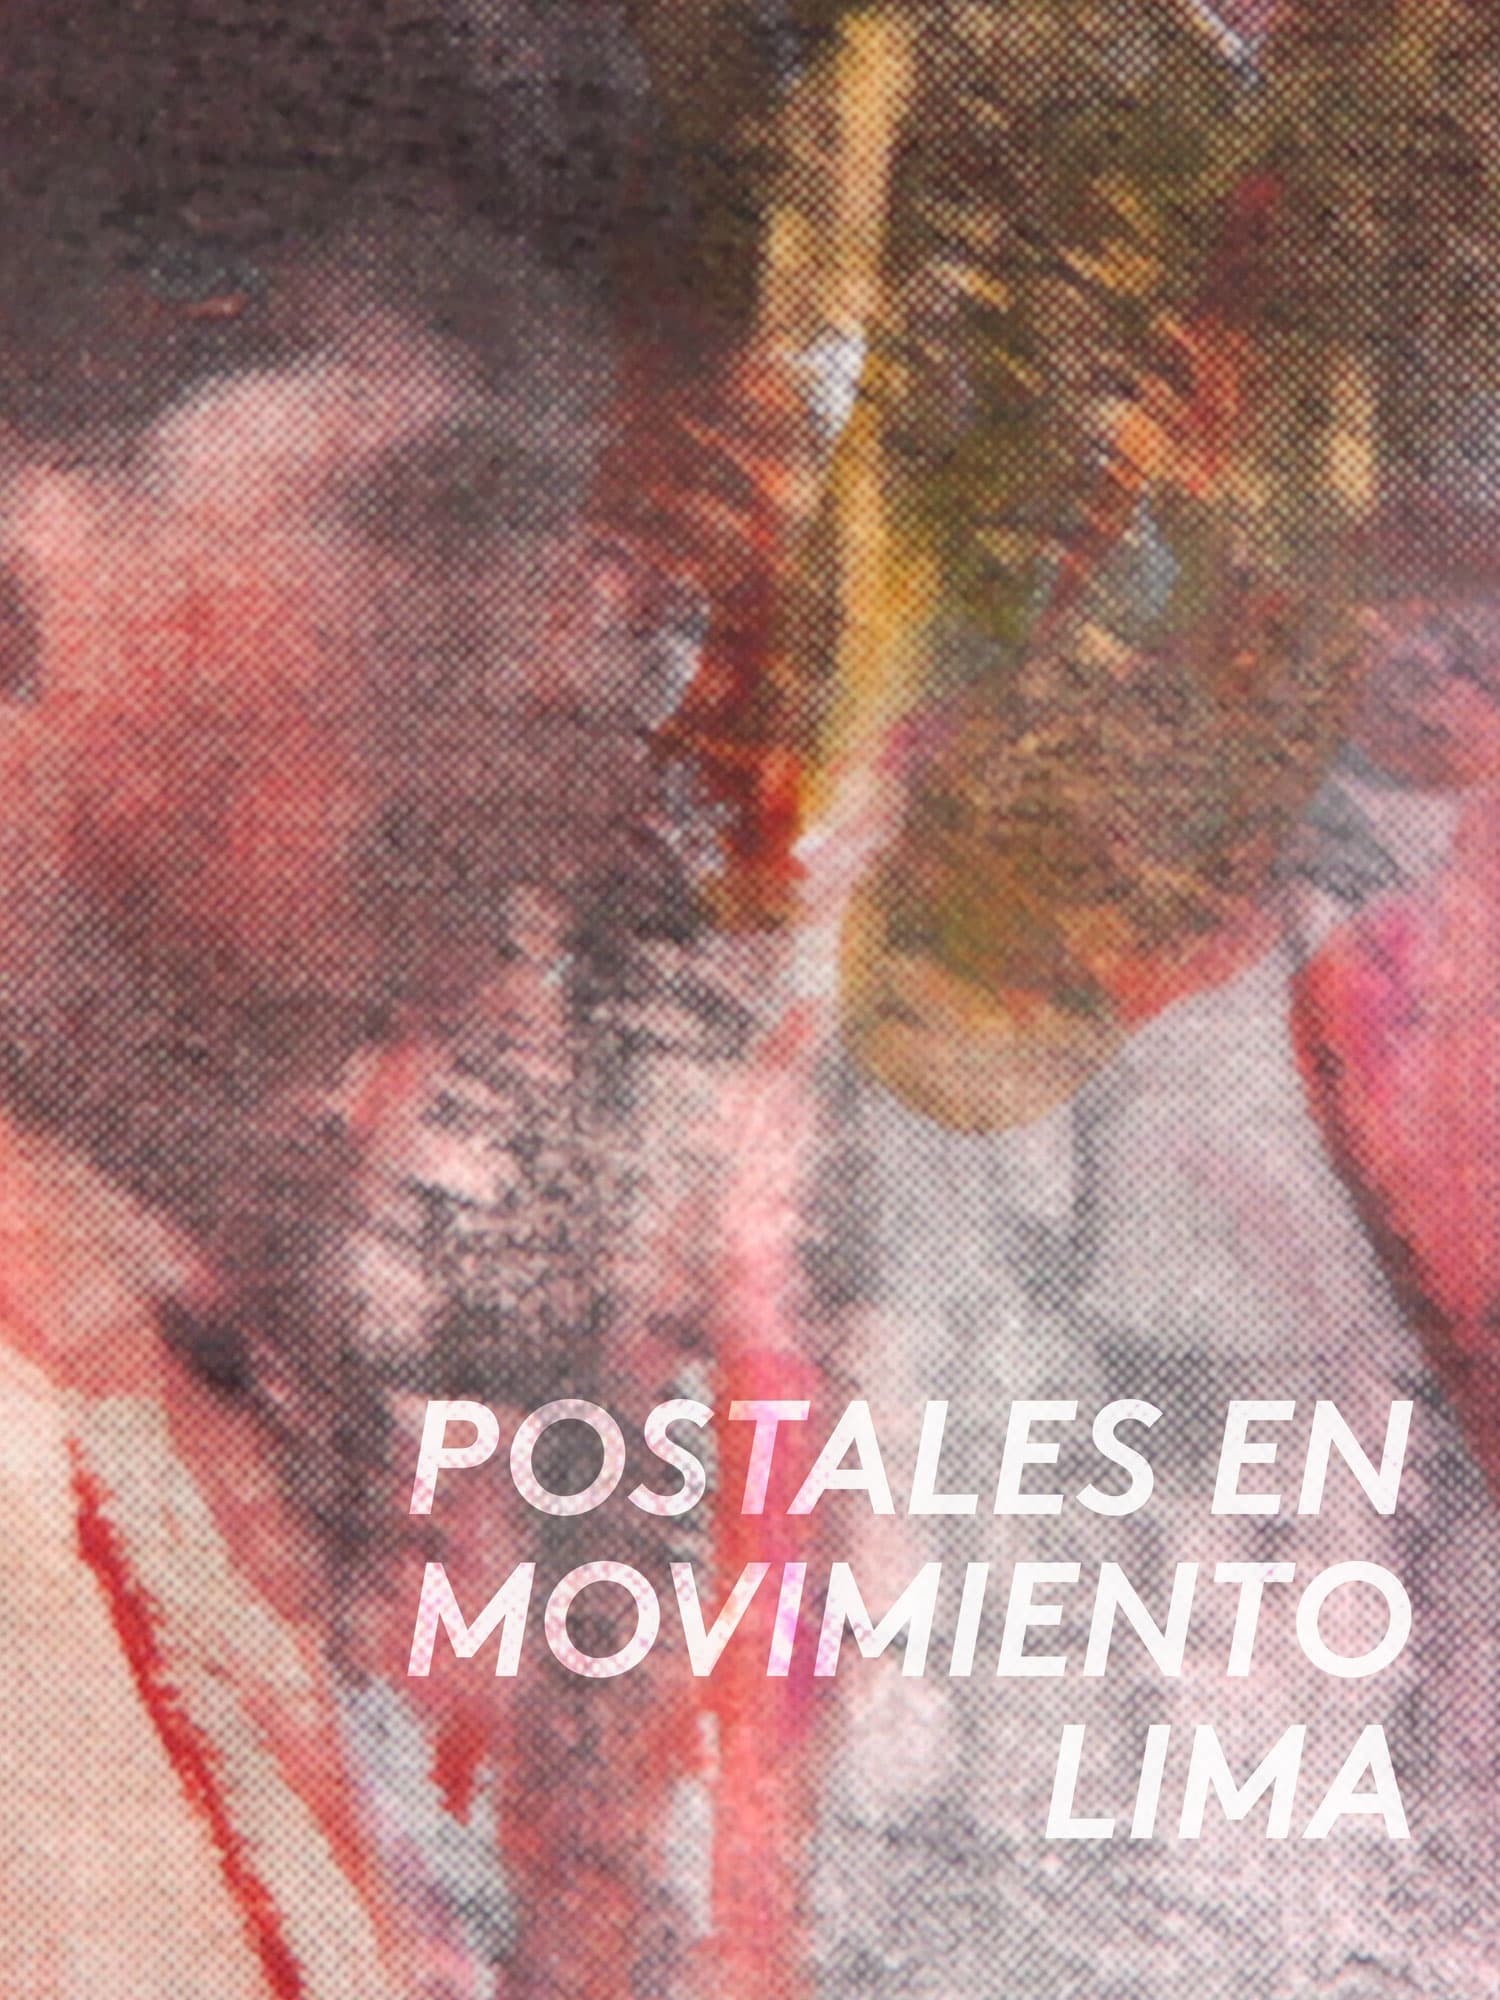 Postales en movimiento: Lima